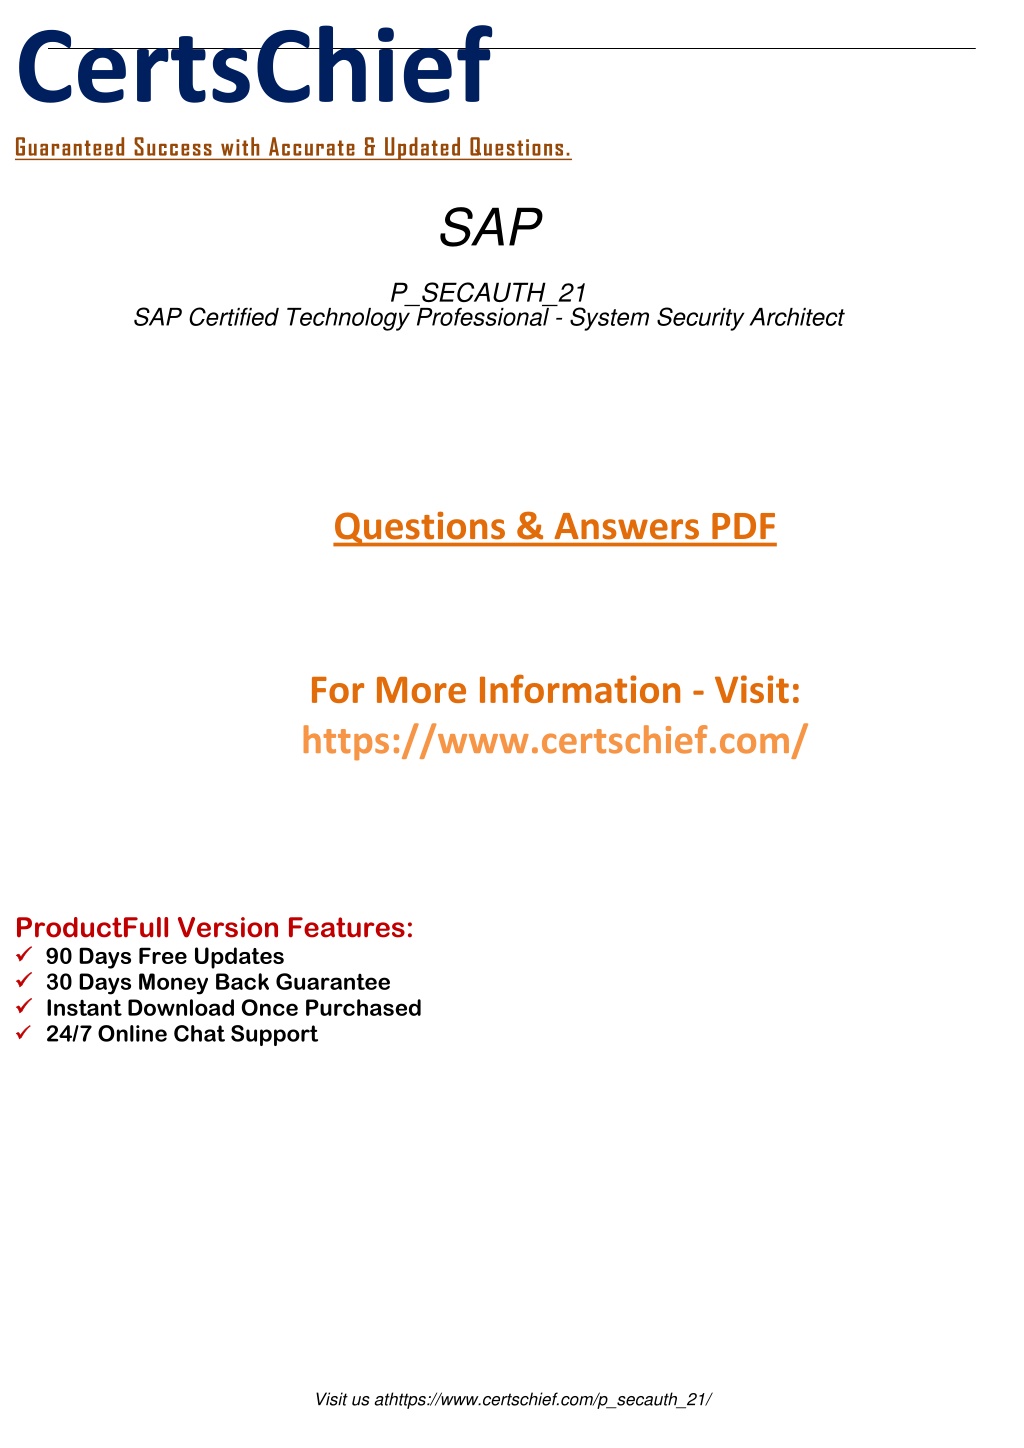 P-SECAUTH-21 PDF Demo - SAP P-SECAUTH-21 Online Prüfungen, P-SECAUTH-21 Online Prüfung